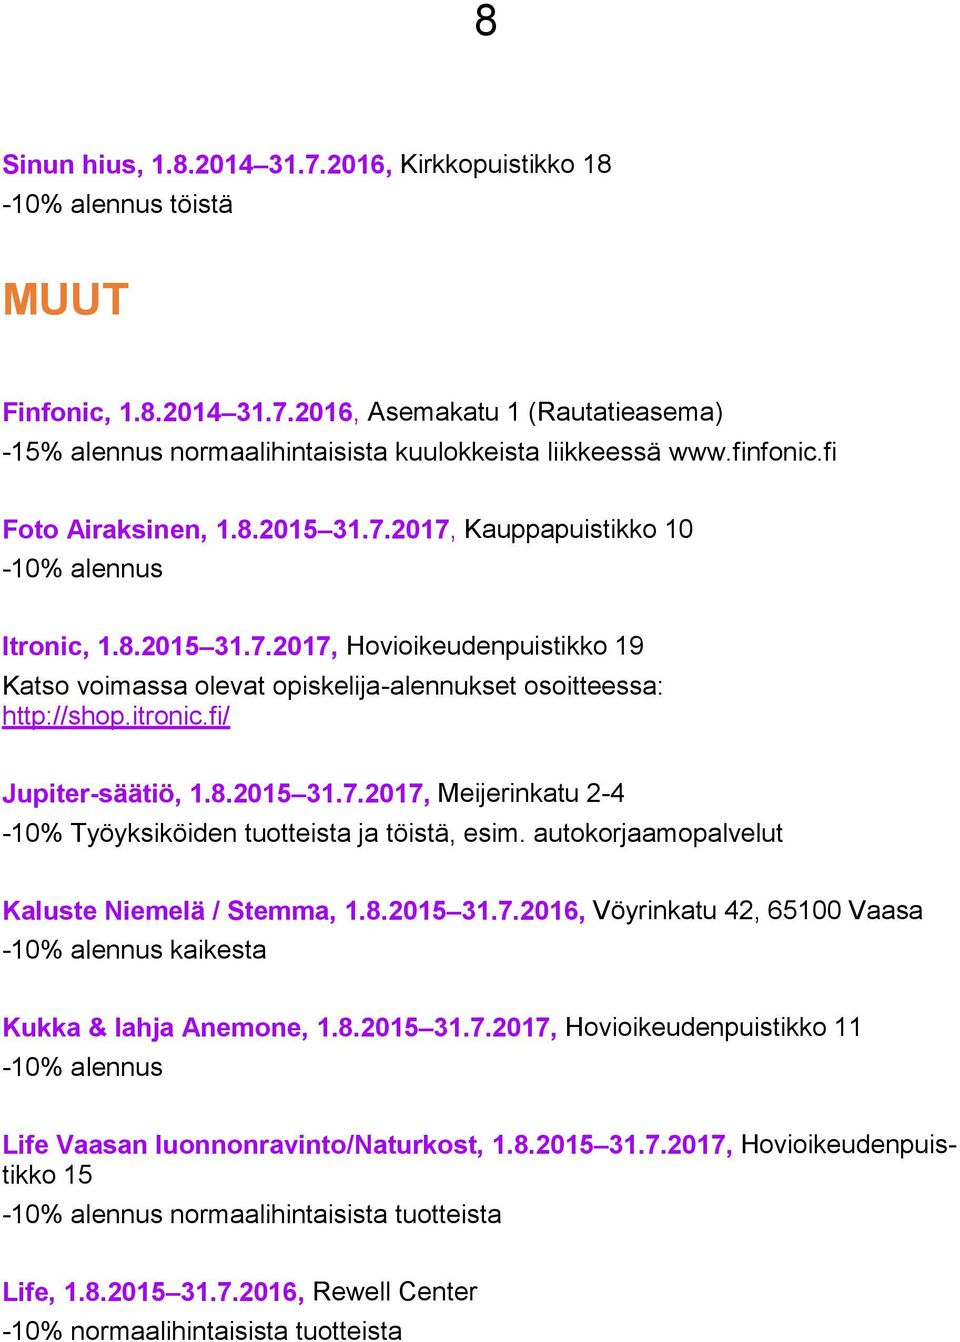 itronic.fi/ Jupiter-säätiö, 1.8.2015 31.7.2017, Meijerinkatu 2-4 -10% Työyksiköiden tuotteista ja töistä, esim. autokorjaamopalvelut Kaluste Niemelä / Stemma, 1.8.2015 31.7.2016, Vöyrinkatu 42, 65100 Vaasa -10% alennus kaikesta Kukka & lahja Anemone, 1.